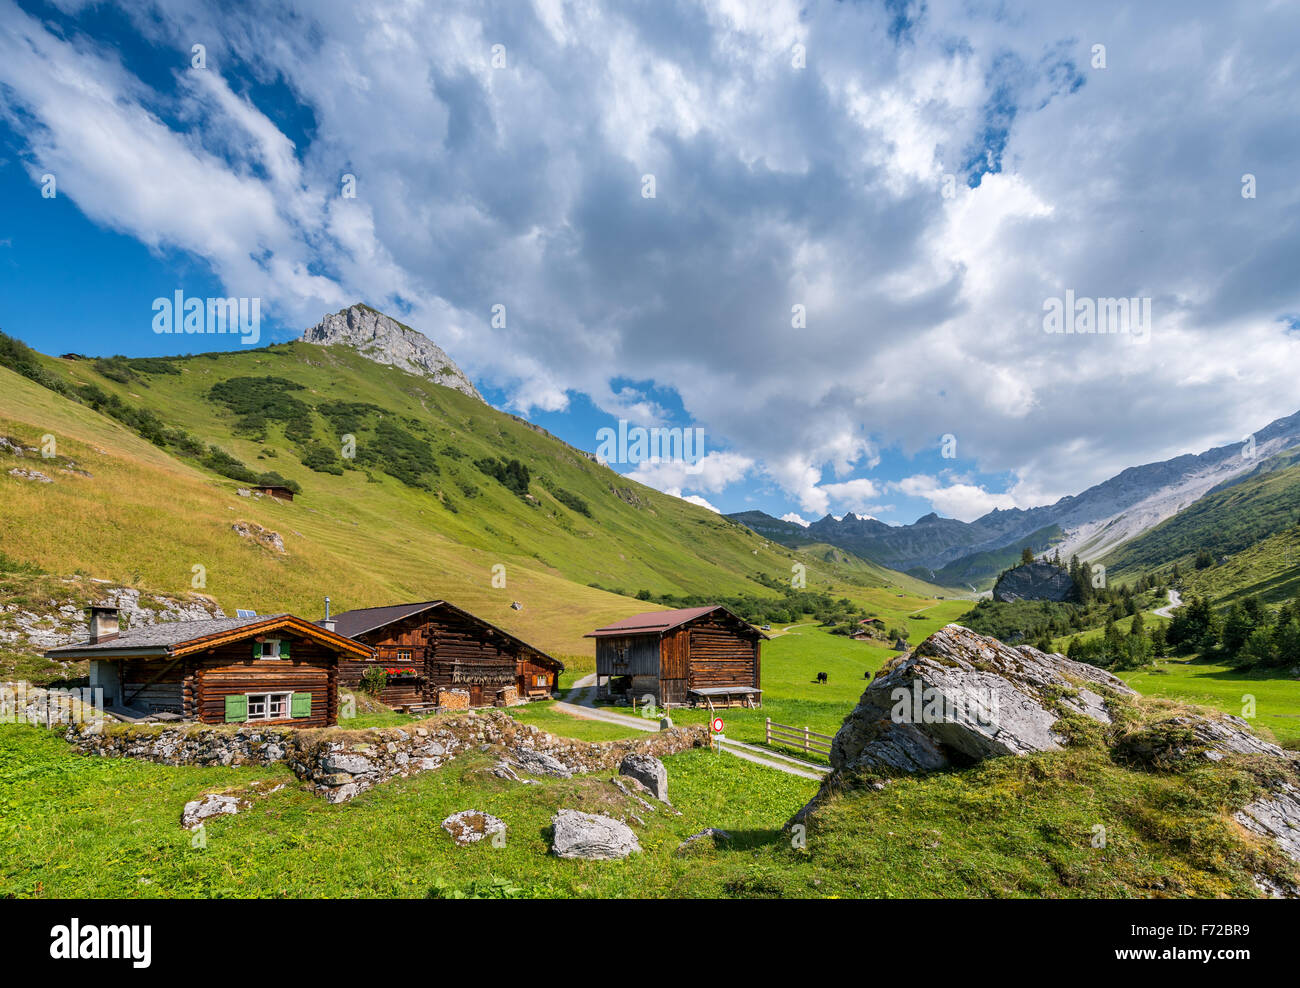 Peaceful Mounain magnifique paysage dans les Alpes, à St. Antönien, Suisse Banque D'Images